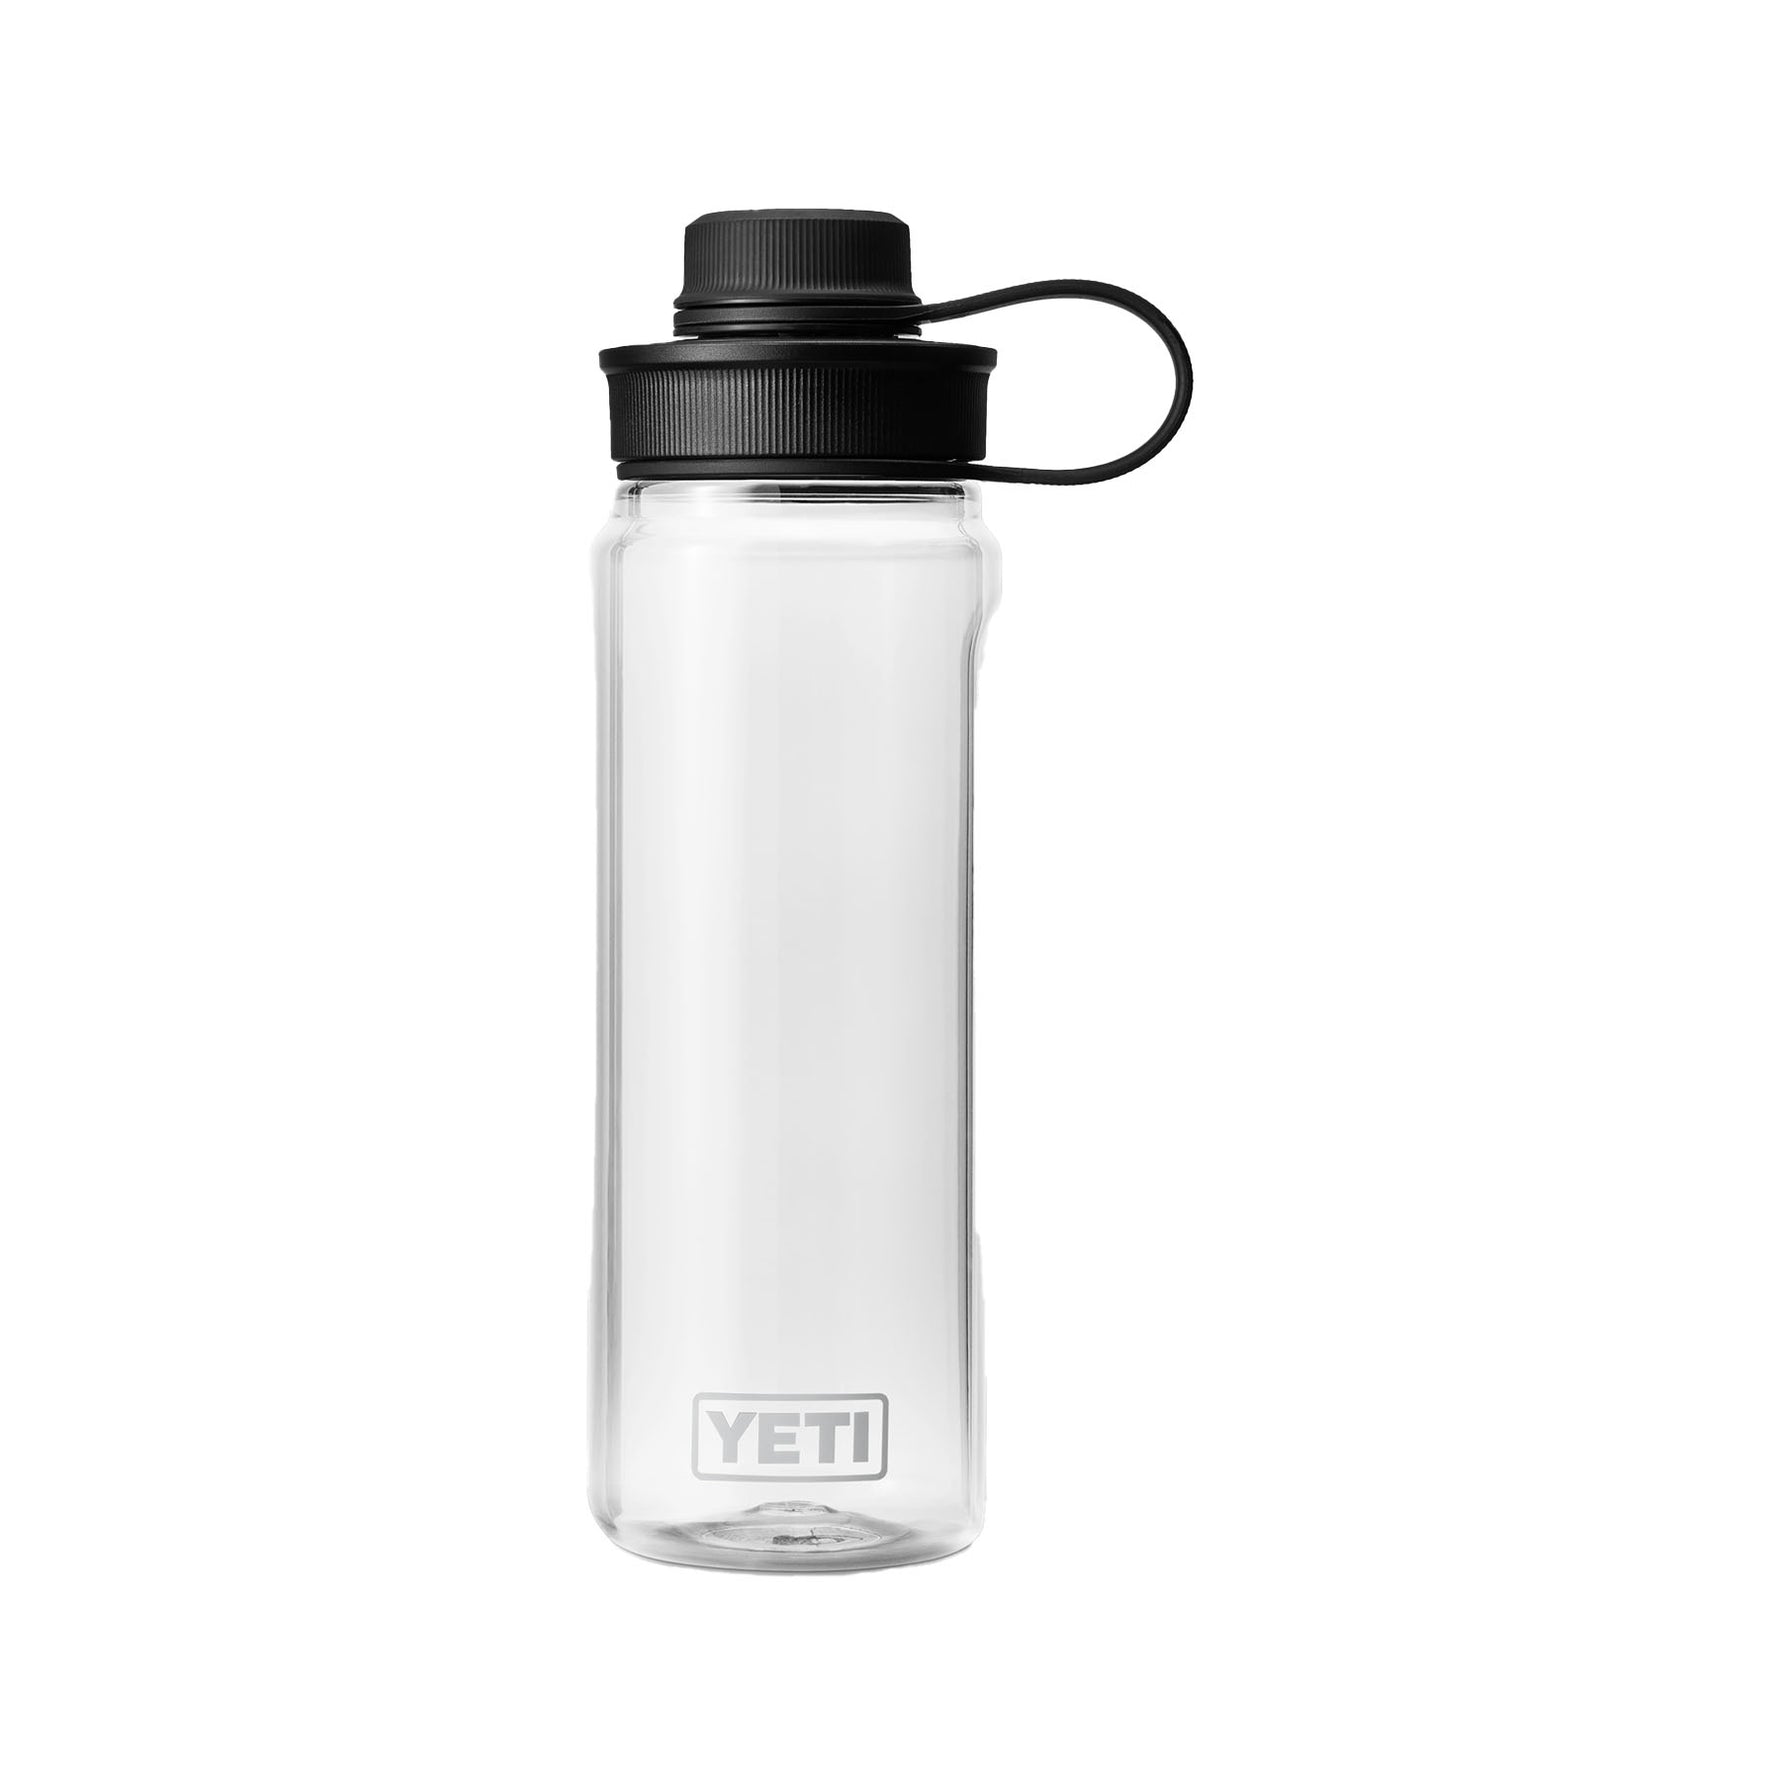 Yeti Yonder Tether Water Bottle 750ml 